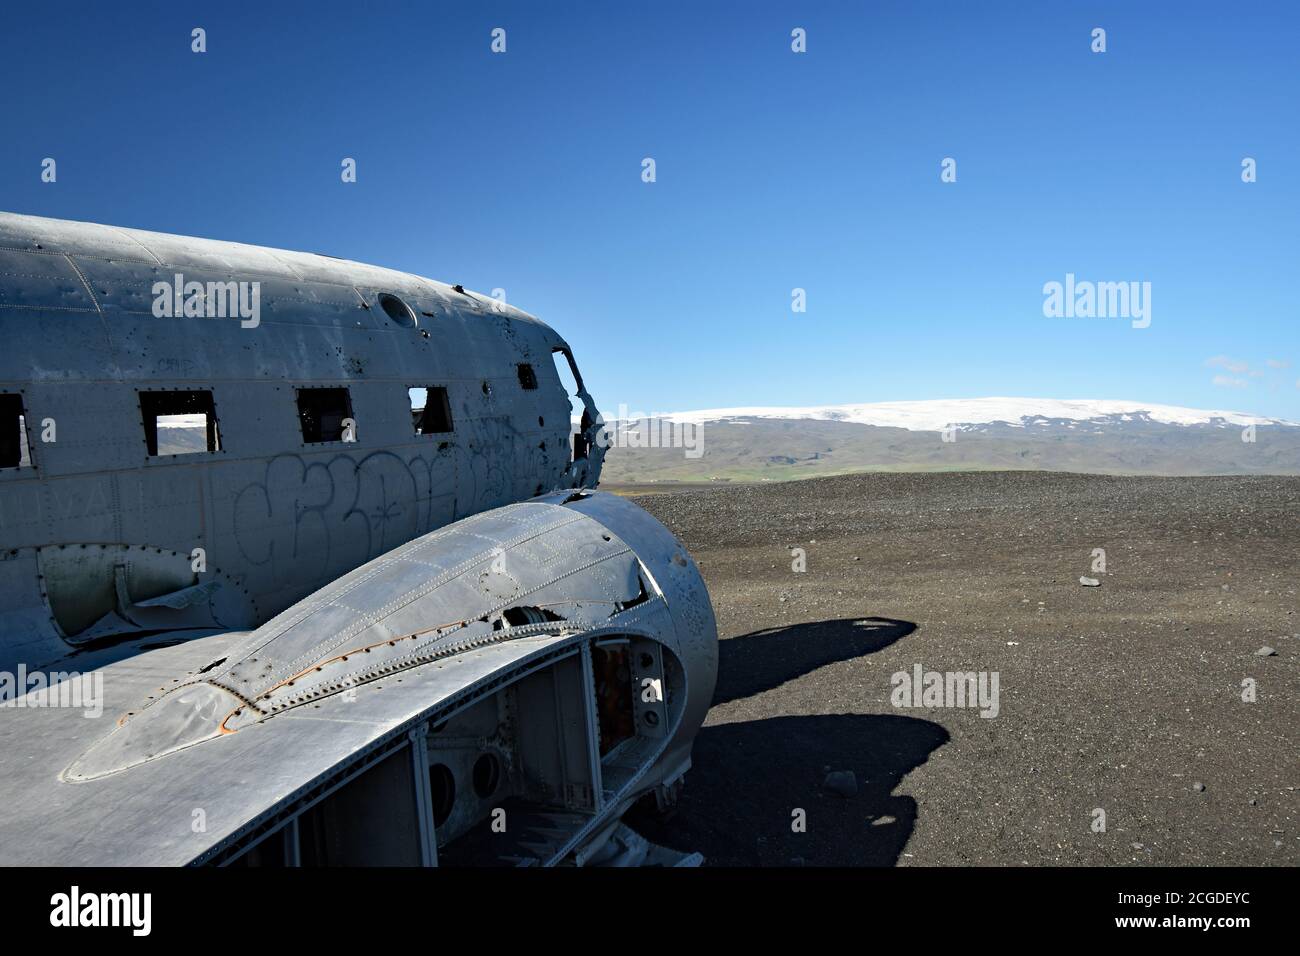 En regardant le long du côté de l'épave de Solheimasandur en direction du cockpit. Myrdalsjokull domine le ciel bleu profond. Islande du Sud. Banque D'Images